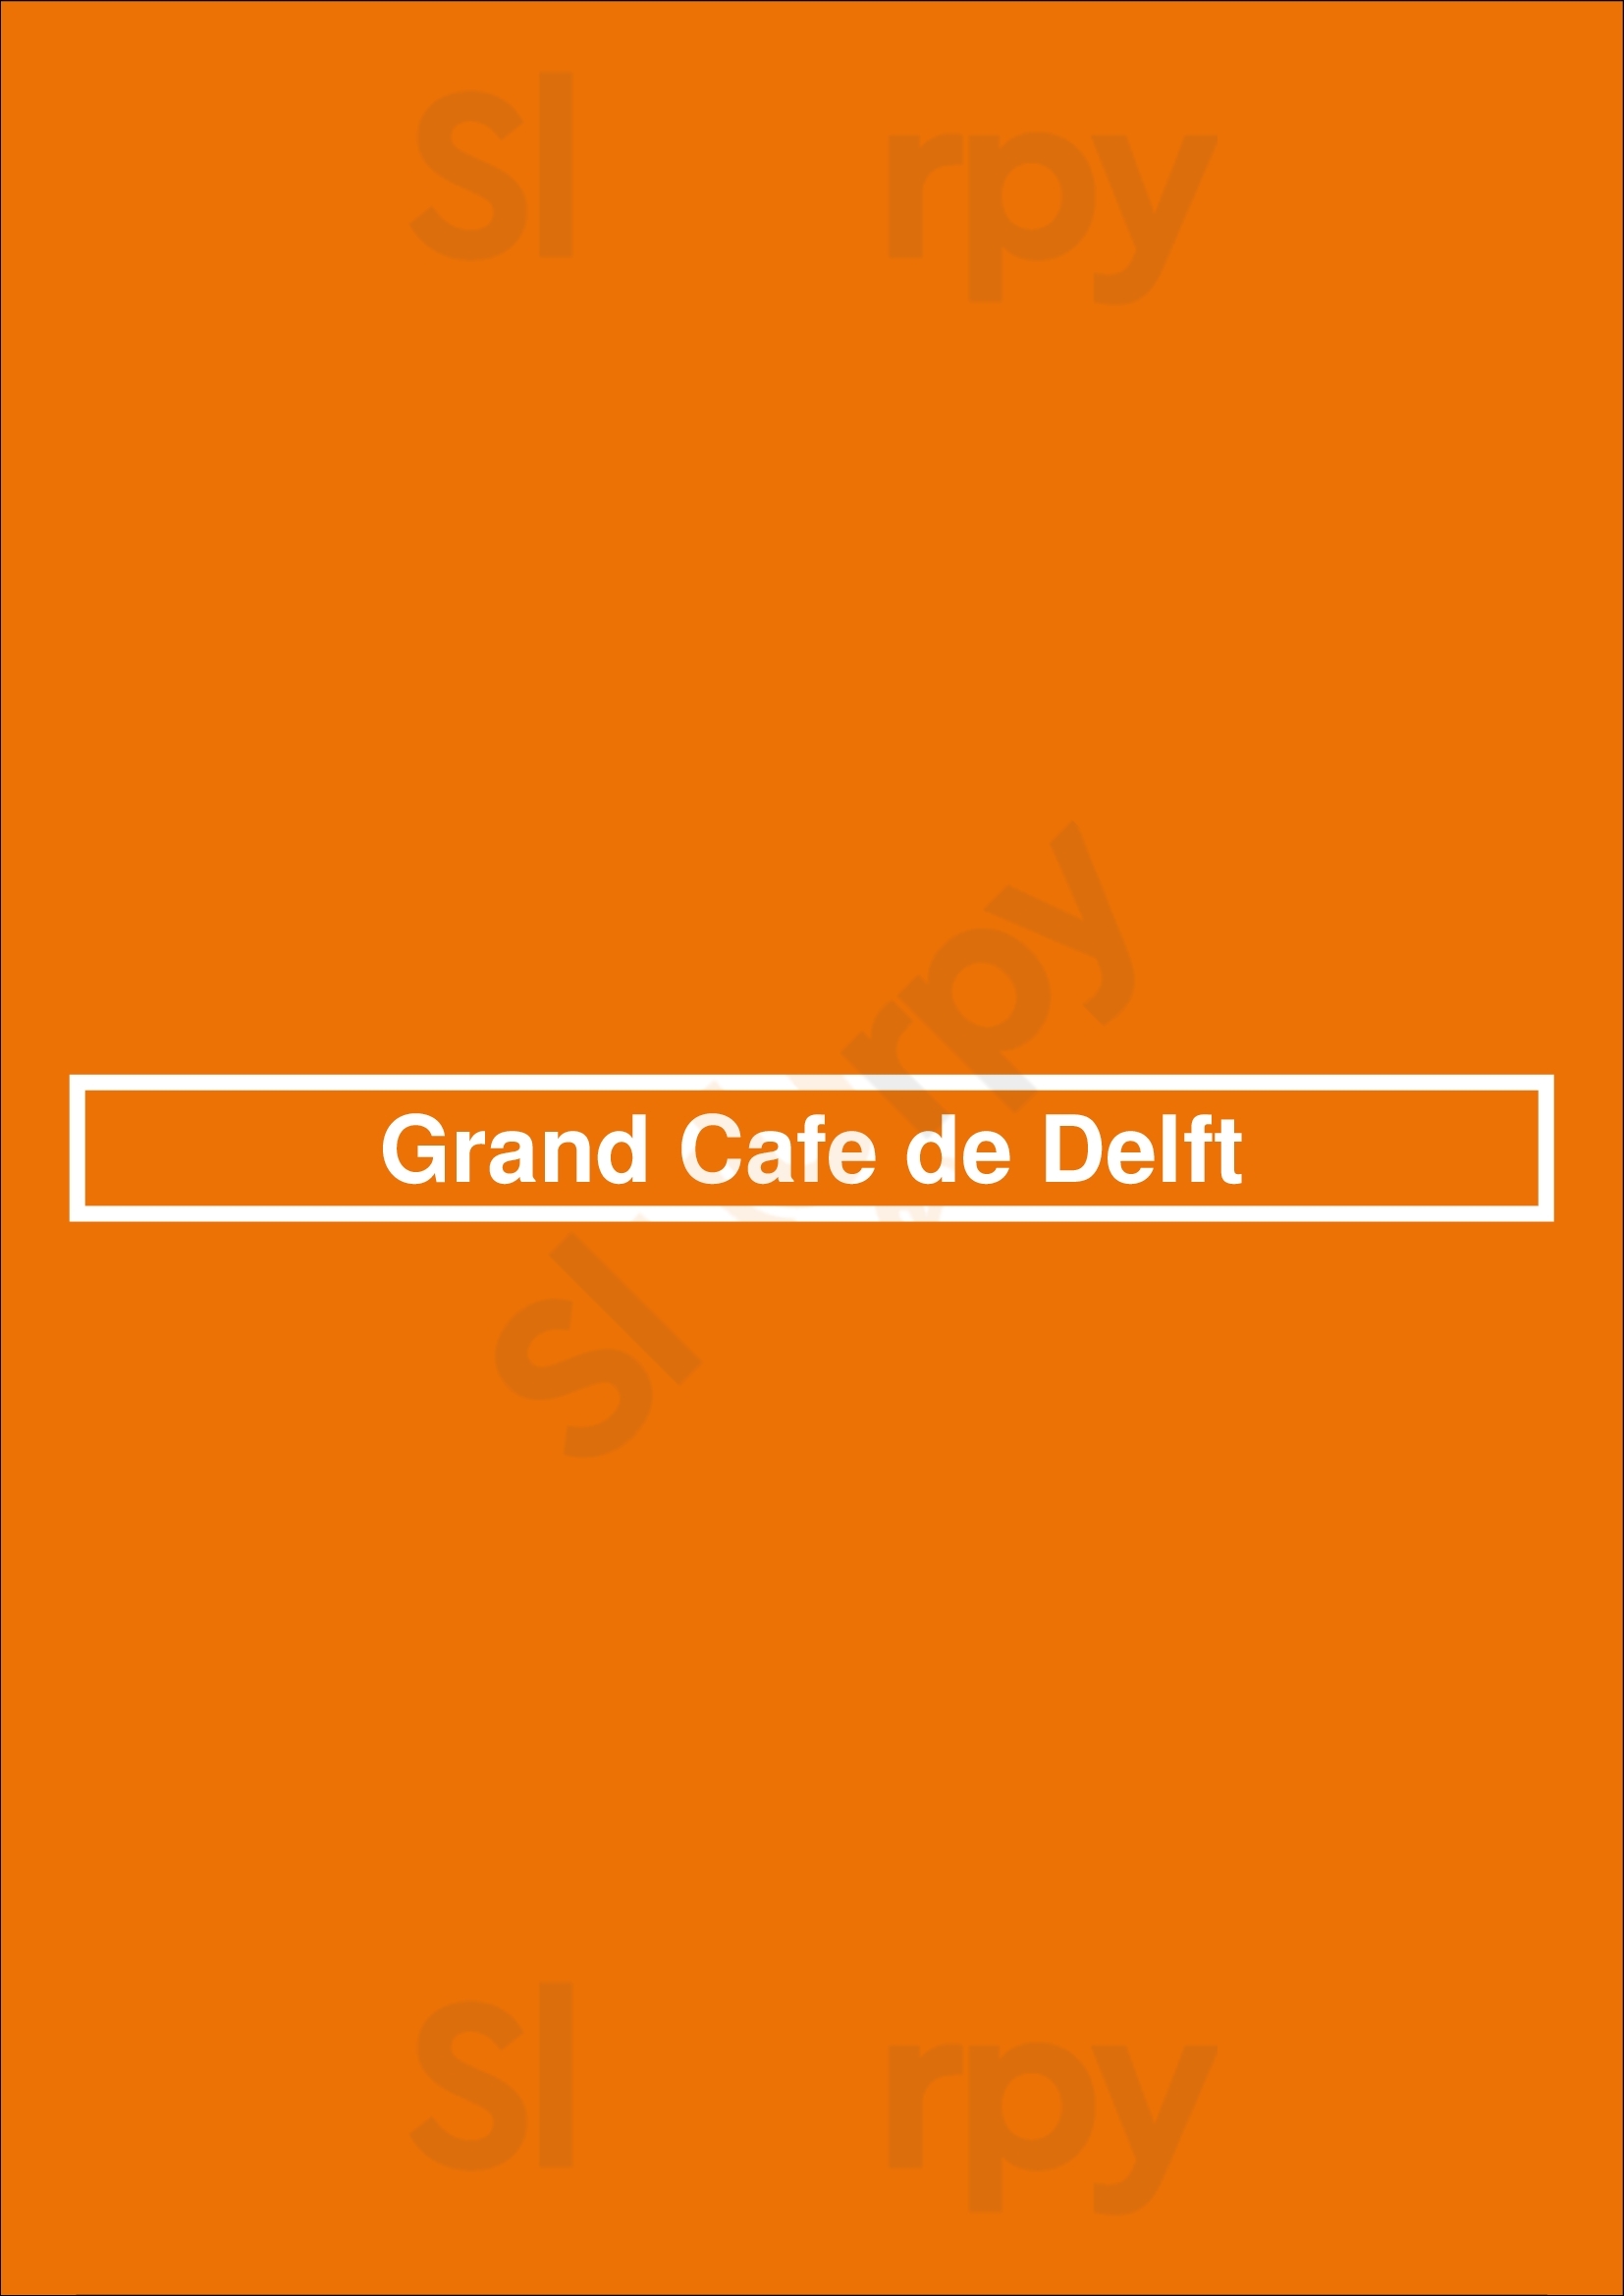 Grand Cafe De Delft Assendelft Menu - 1